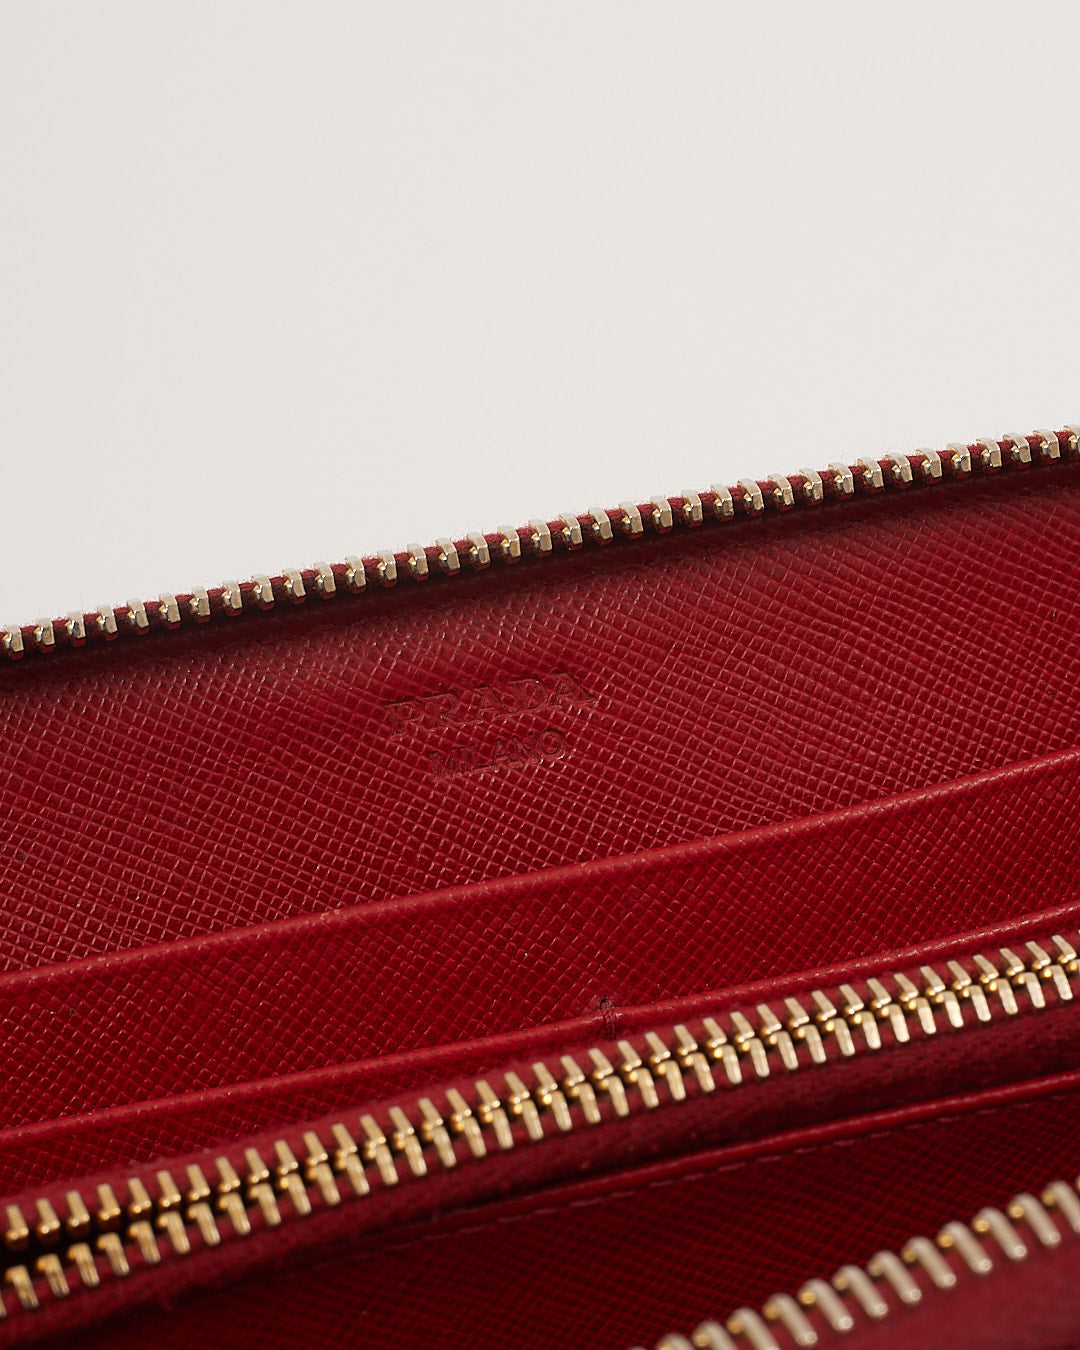 Prada Red Saffiano Leather Zippy Wallet